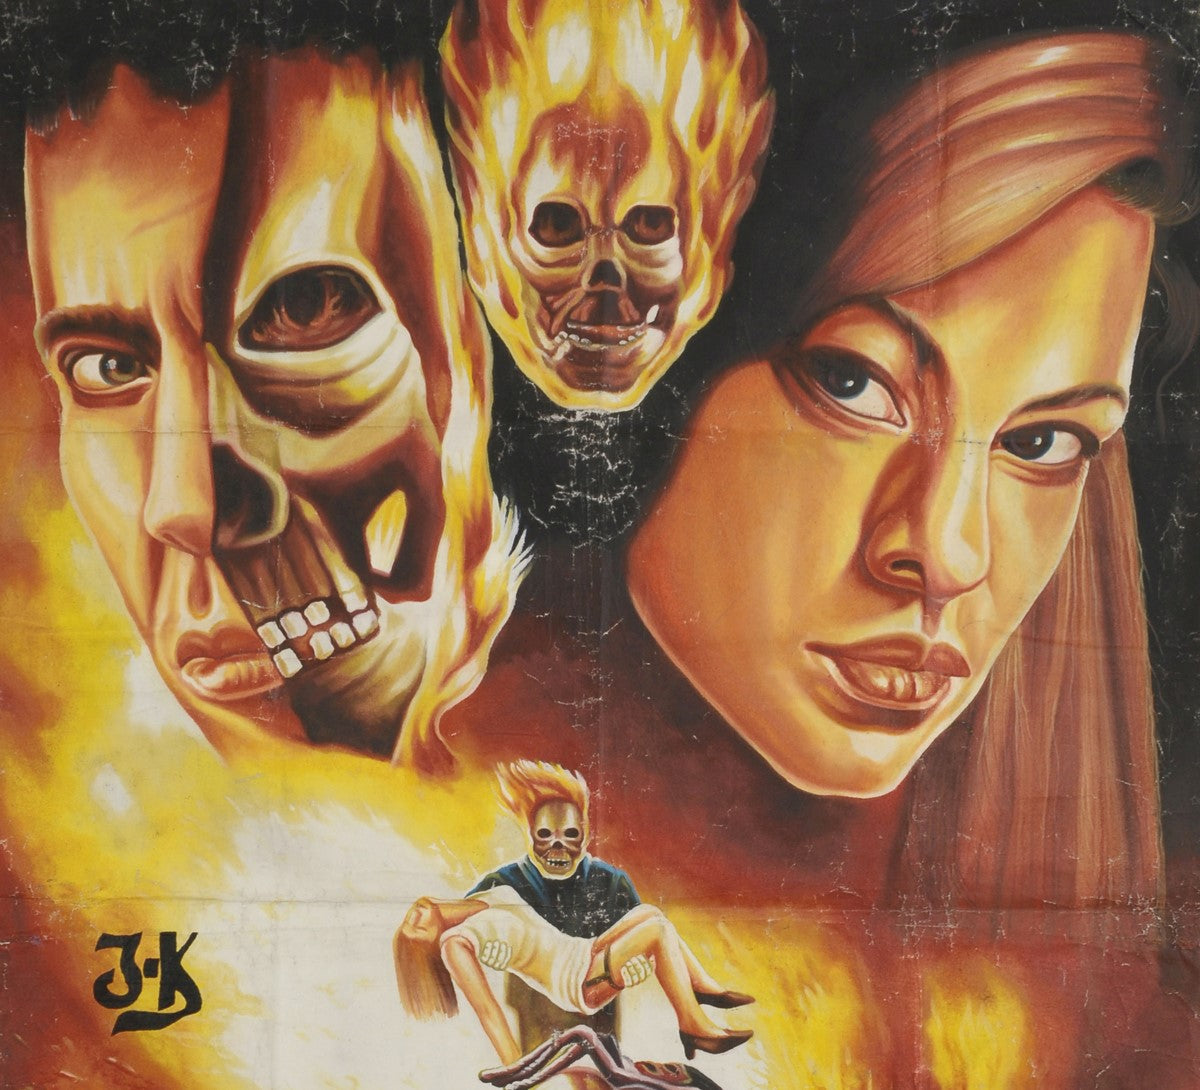 Αφίσα ταινίας Ghost Rider ζωγραφισμένη στο χέρι στην Γκάνα για τον τοπικό ηθοποιό του κινηματογράφου Nicolas Cage